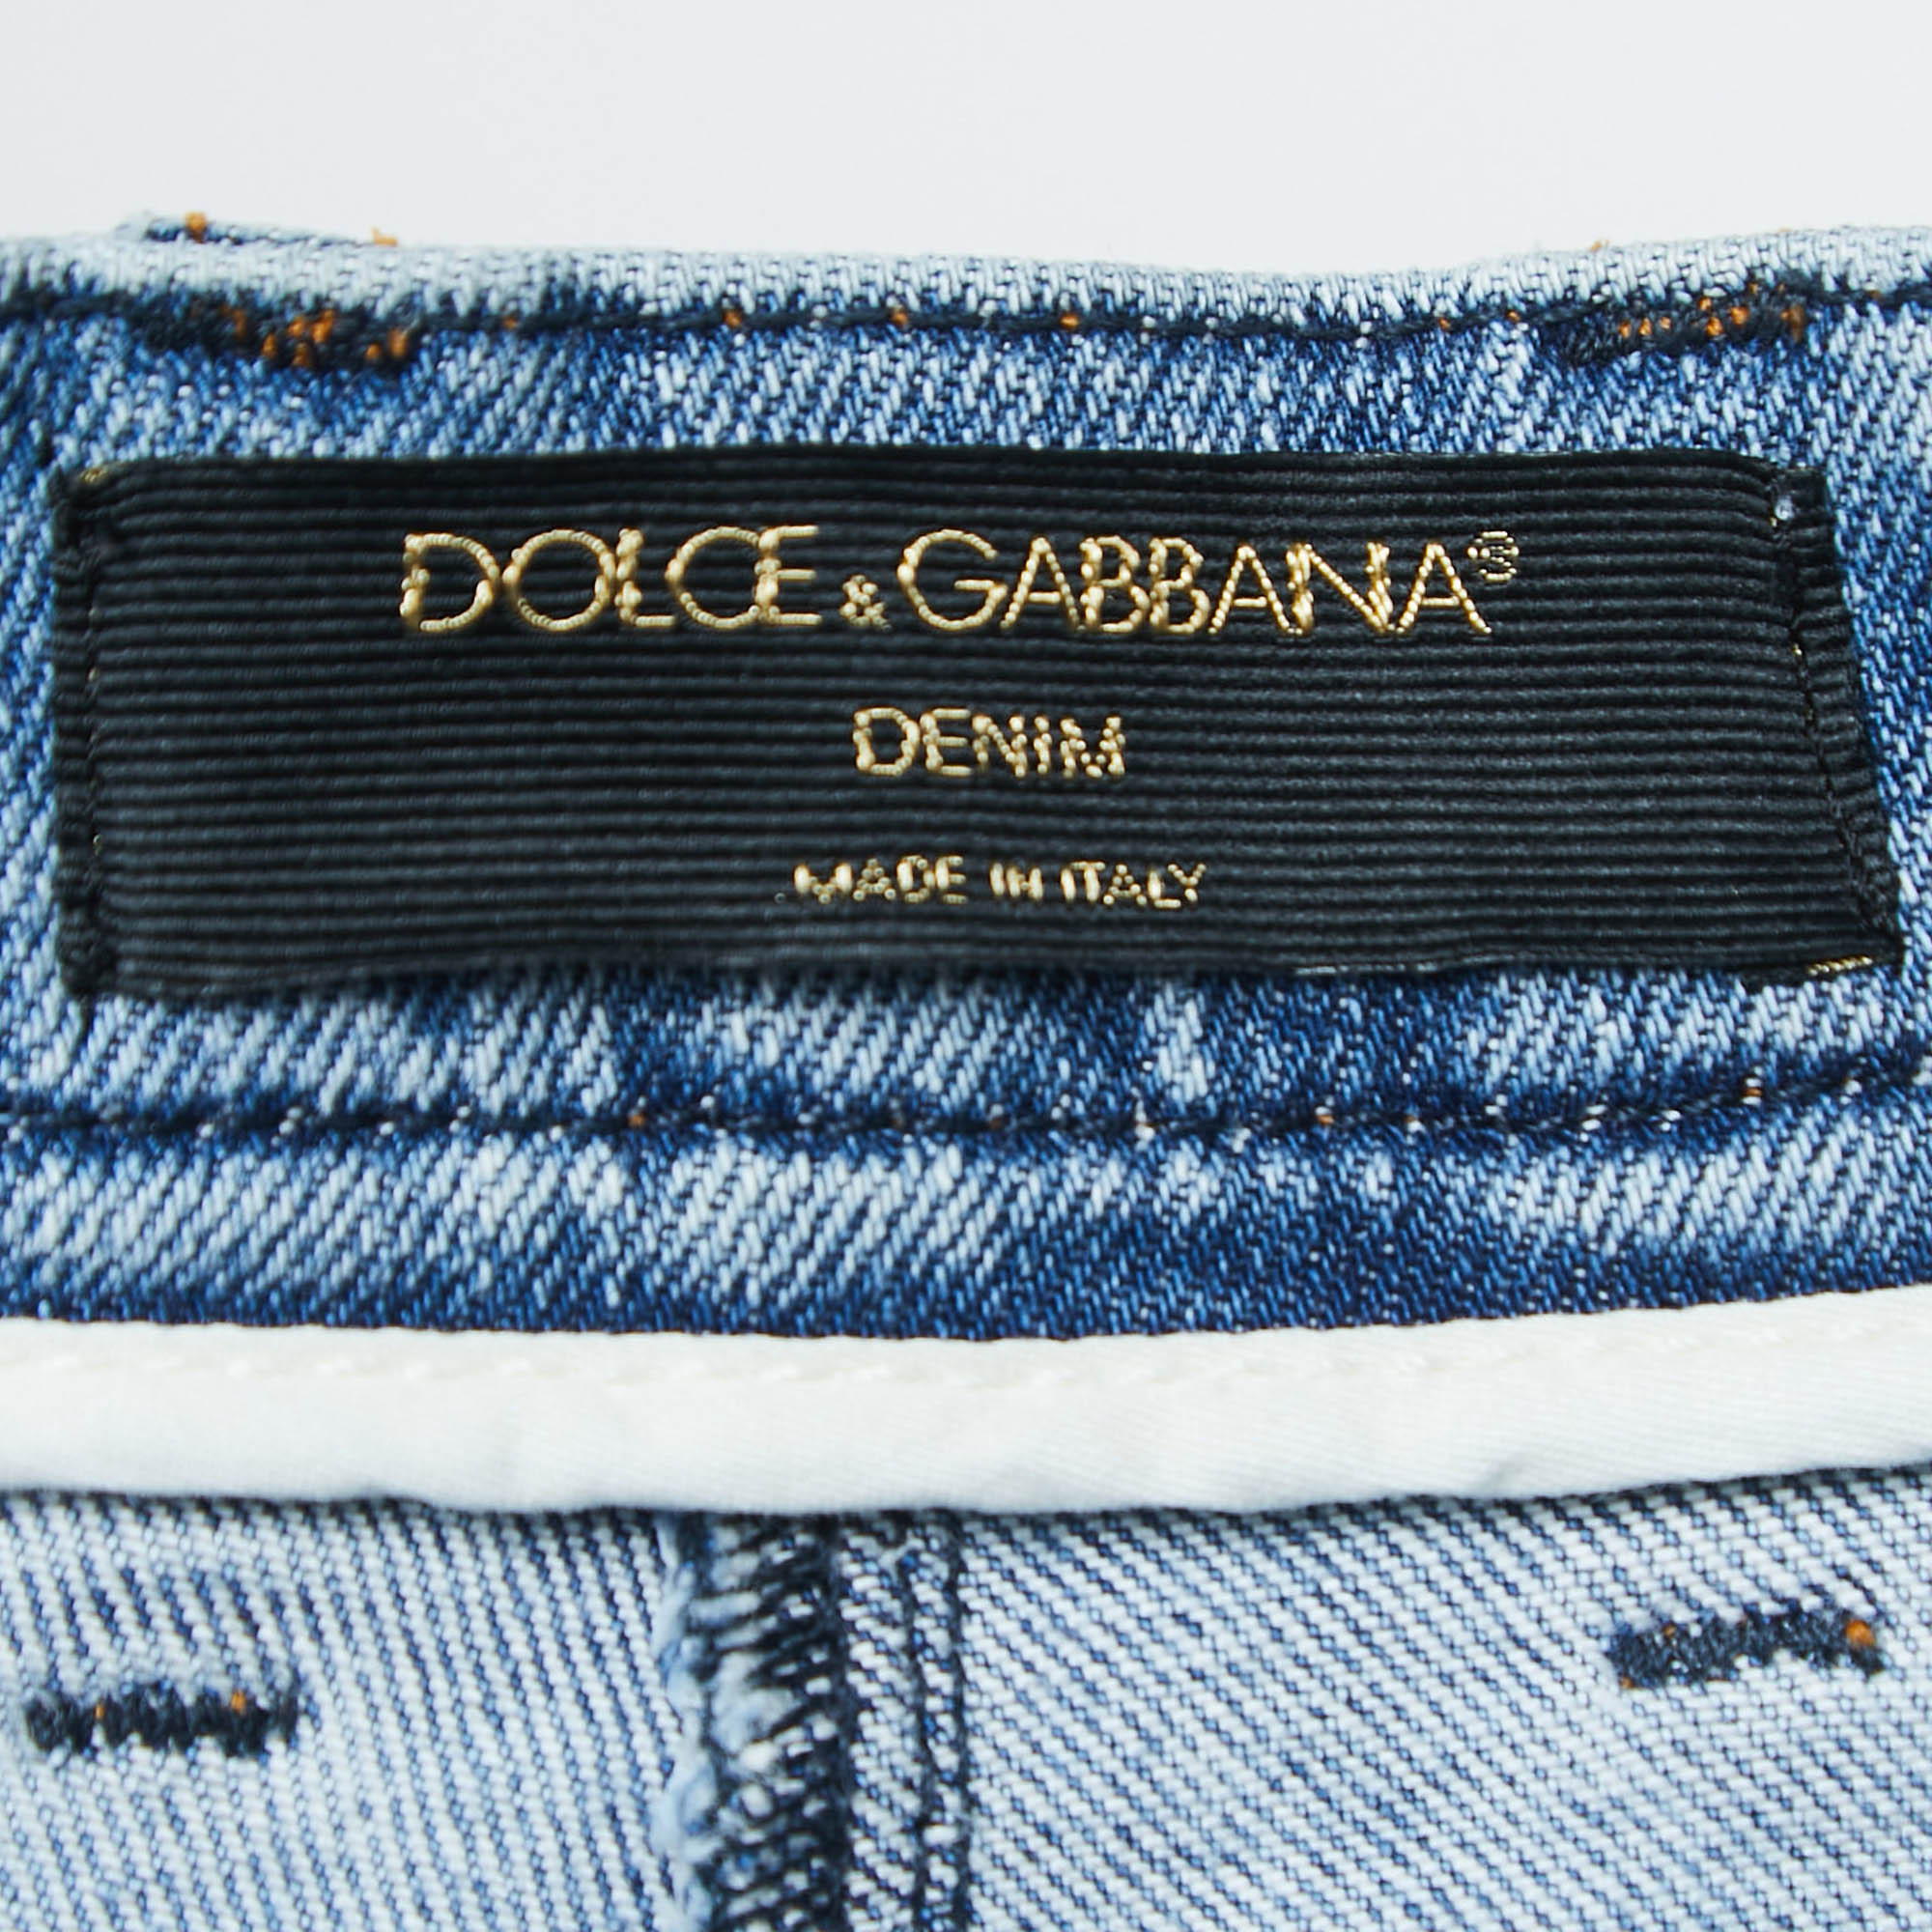 Dolce & Gabbana Blue Denim High Waist Cropped Jeans S Waist 25